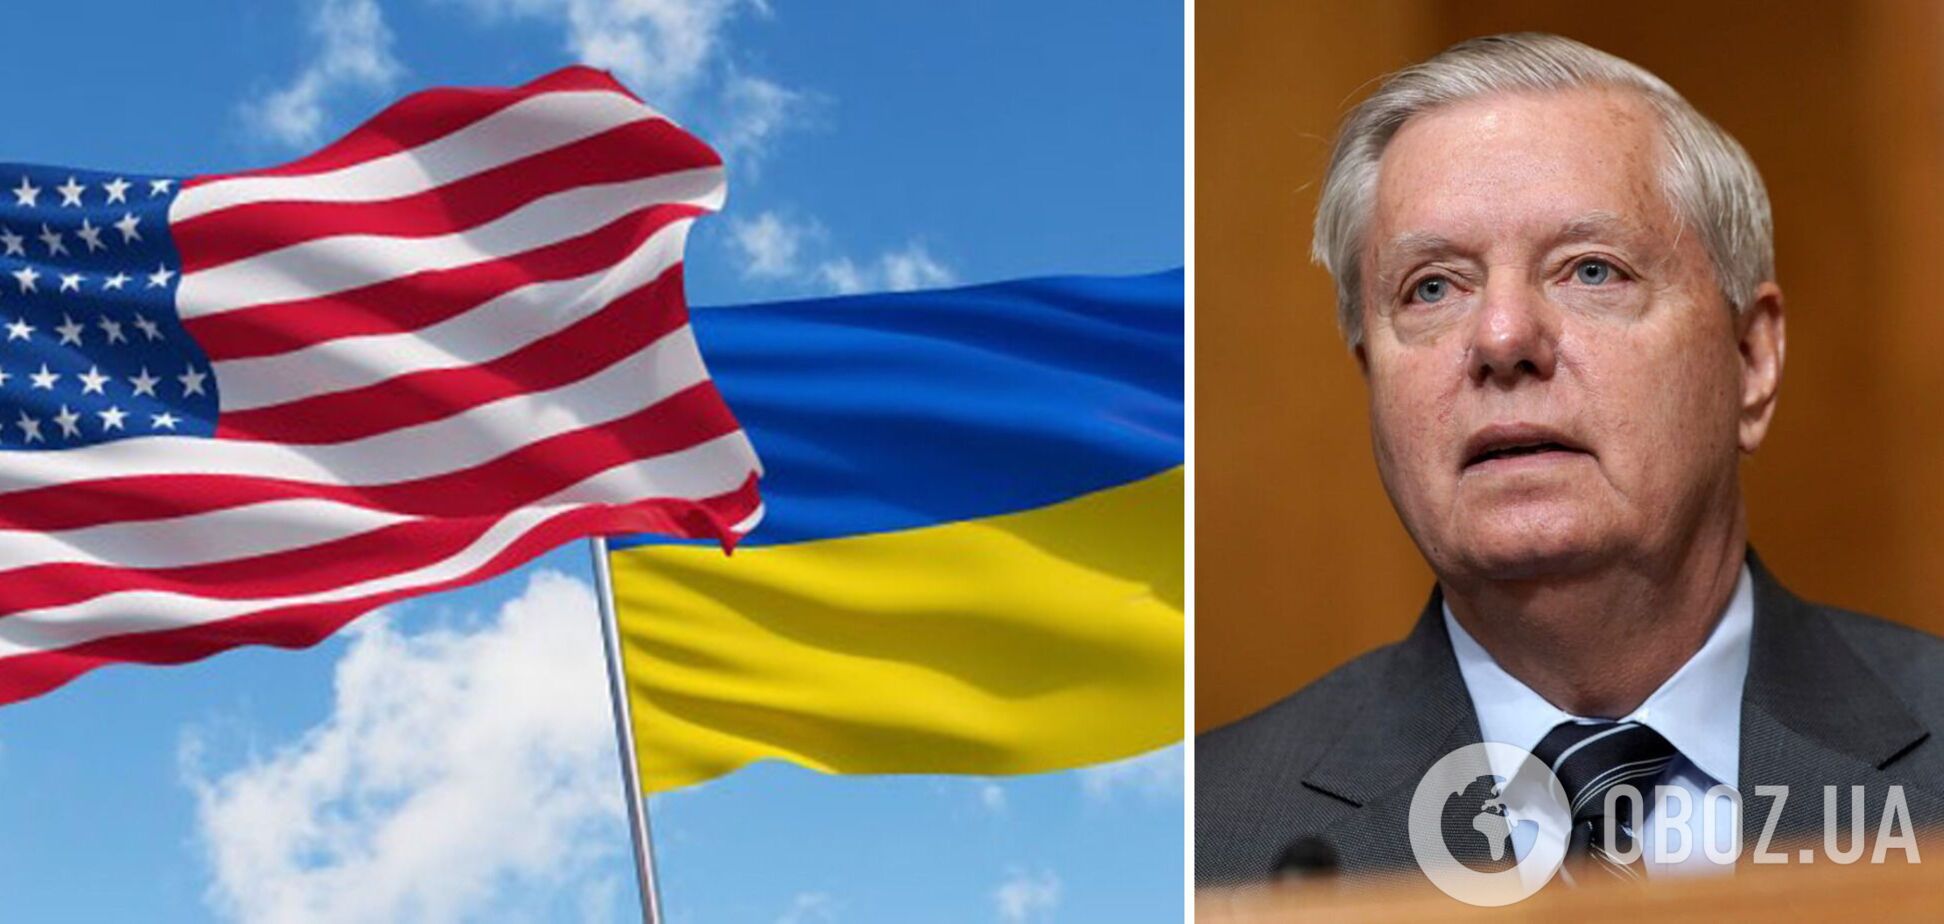 'Вы увидите демонстрацию силы': сенатор Грэм после визита в Украину назвал планы ВСУ на контрнаступление 'впечатляющими'